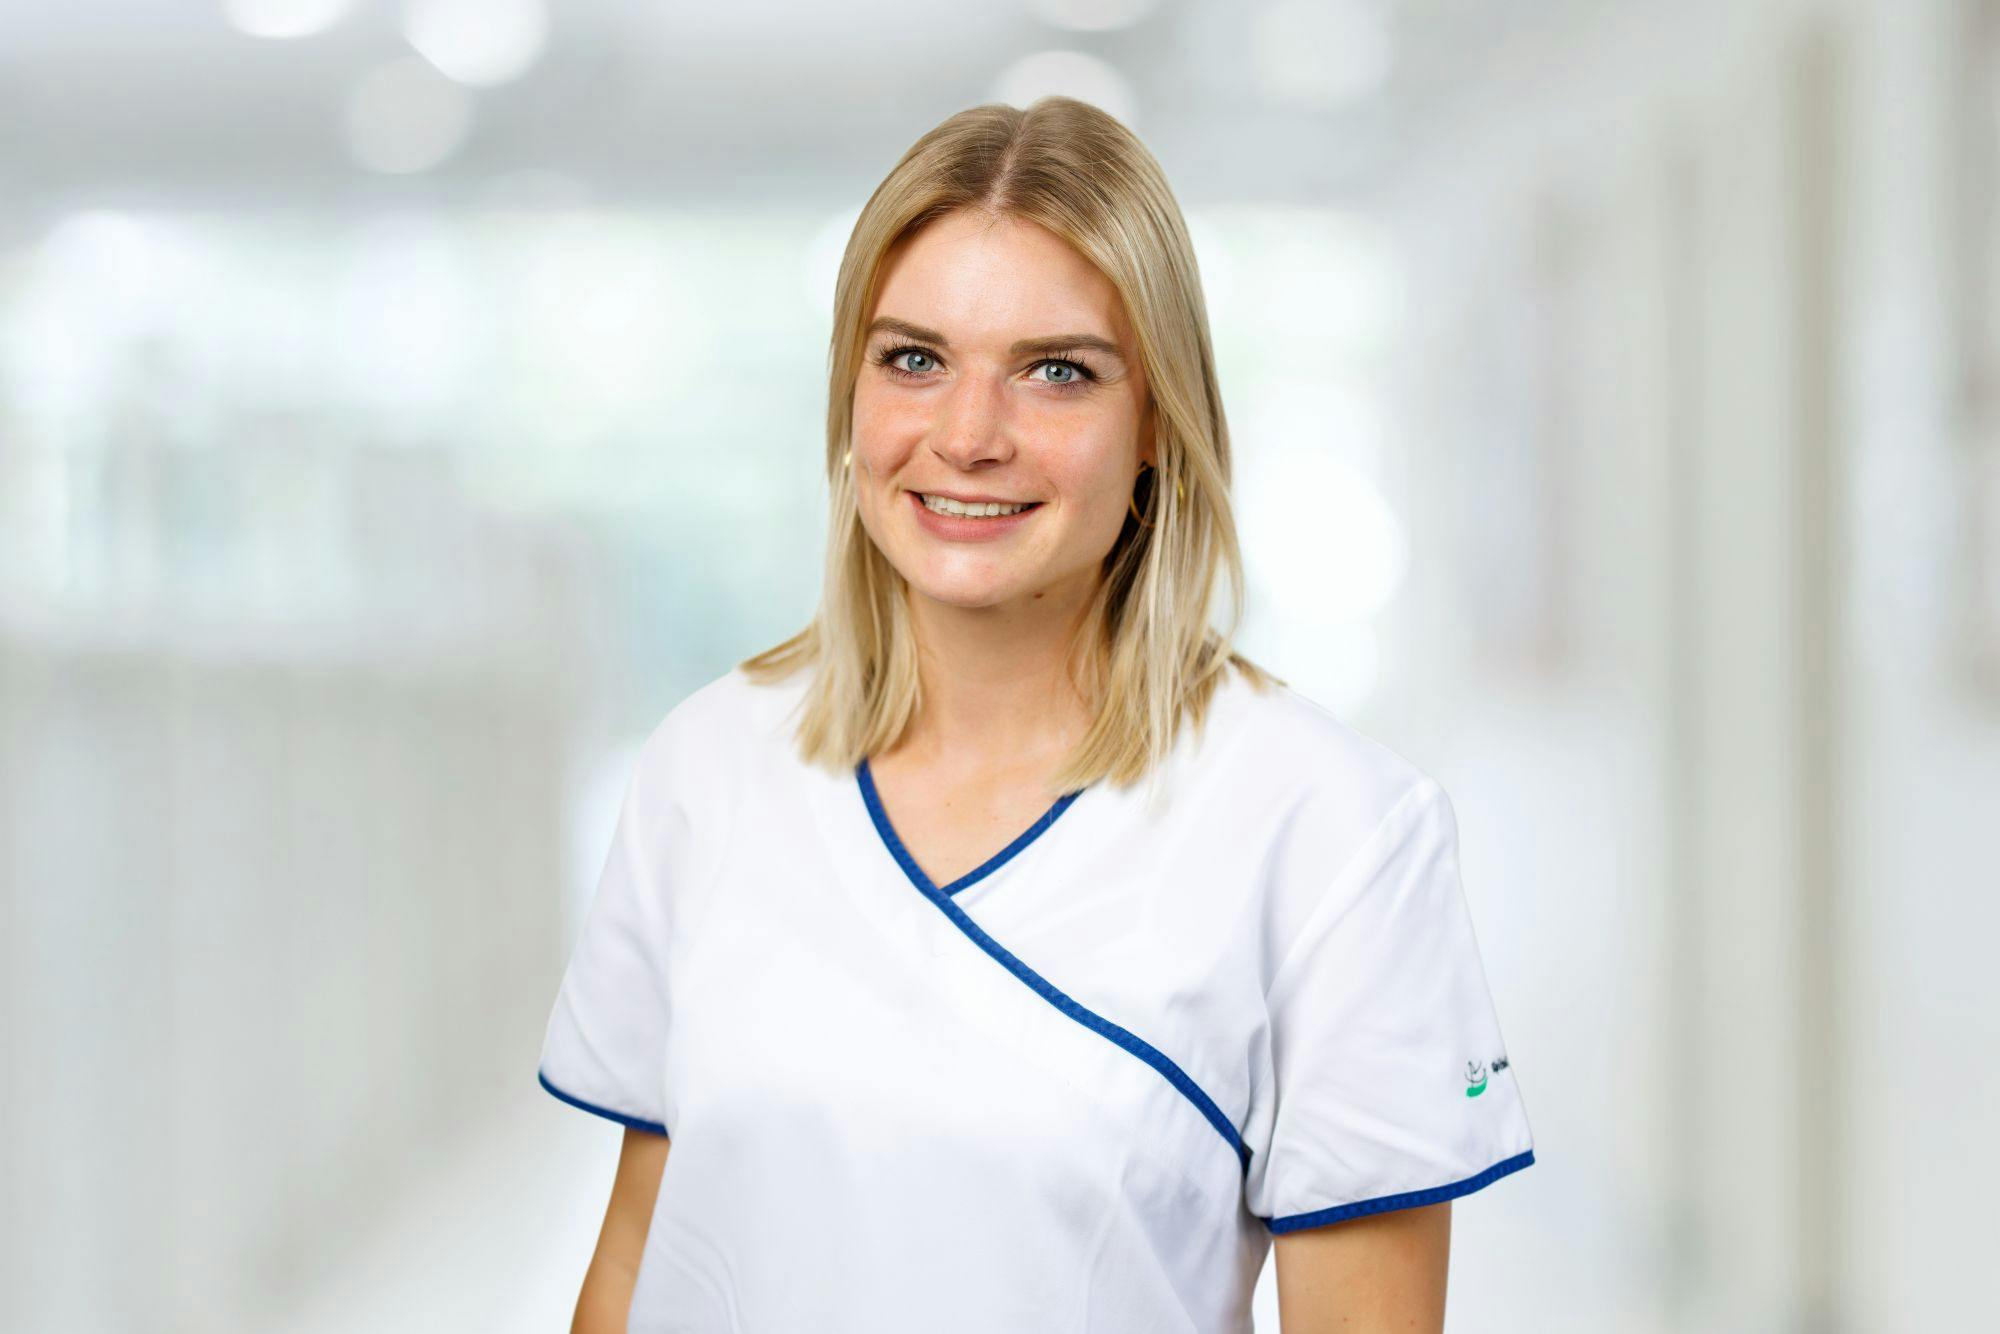 Junge lächelnde Frau in medizinischer Berufskleidung vor unscharfem Hintergrund.